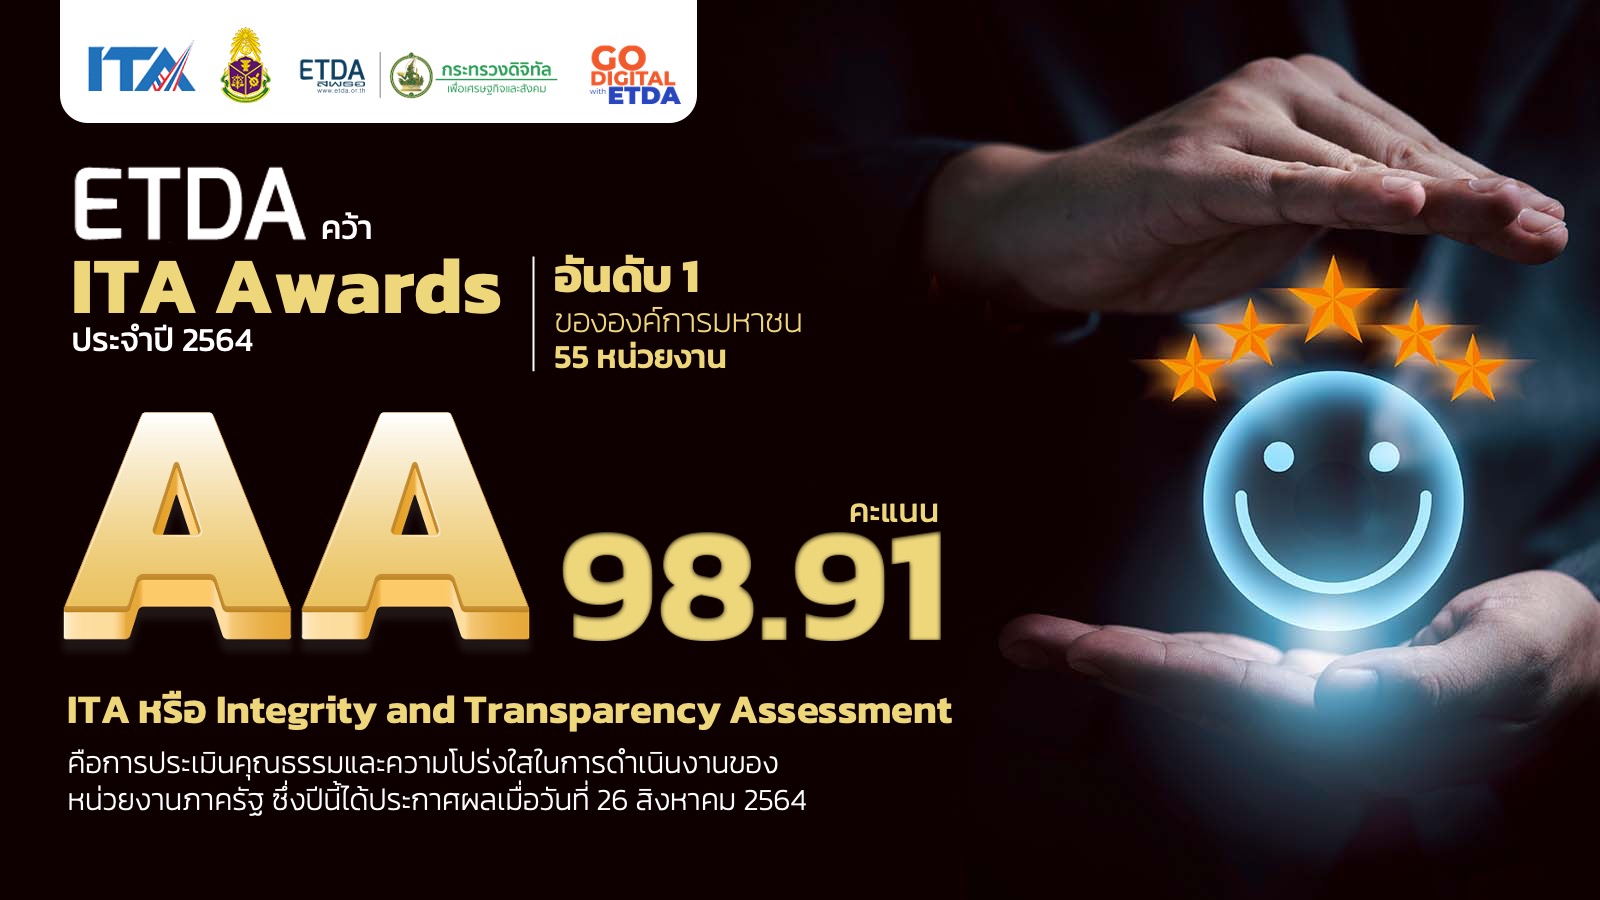 ETDA คว้ารางวัล ITA Awards 2021 สูงสุดในองค์การมหาชน ระดับ AA ที่ 98.91 คะแนน